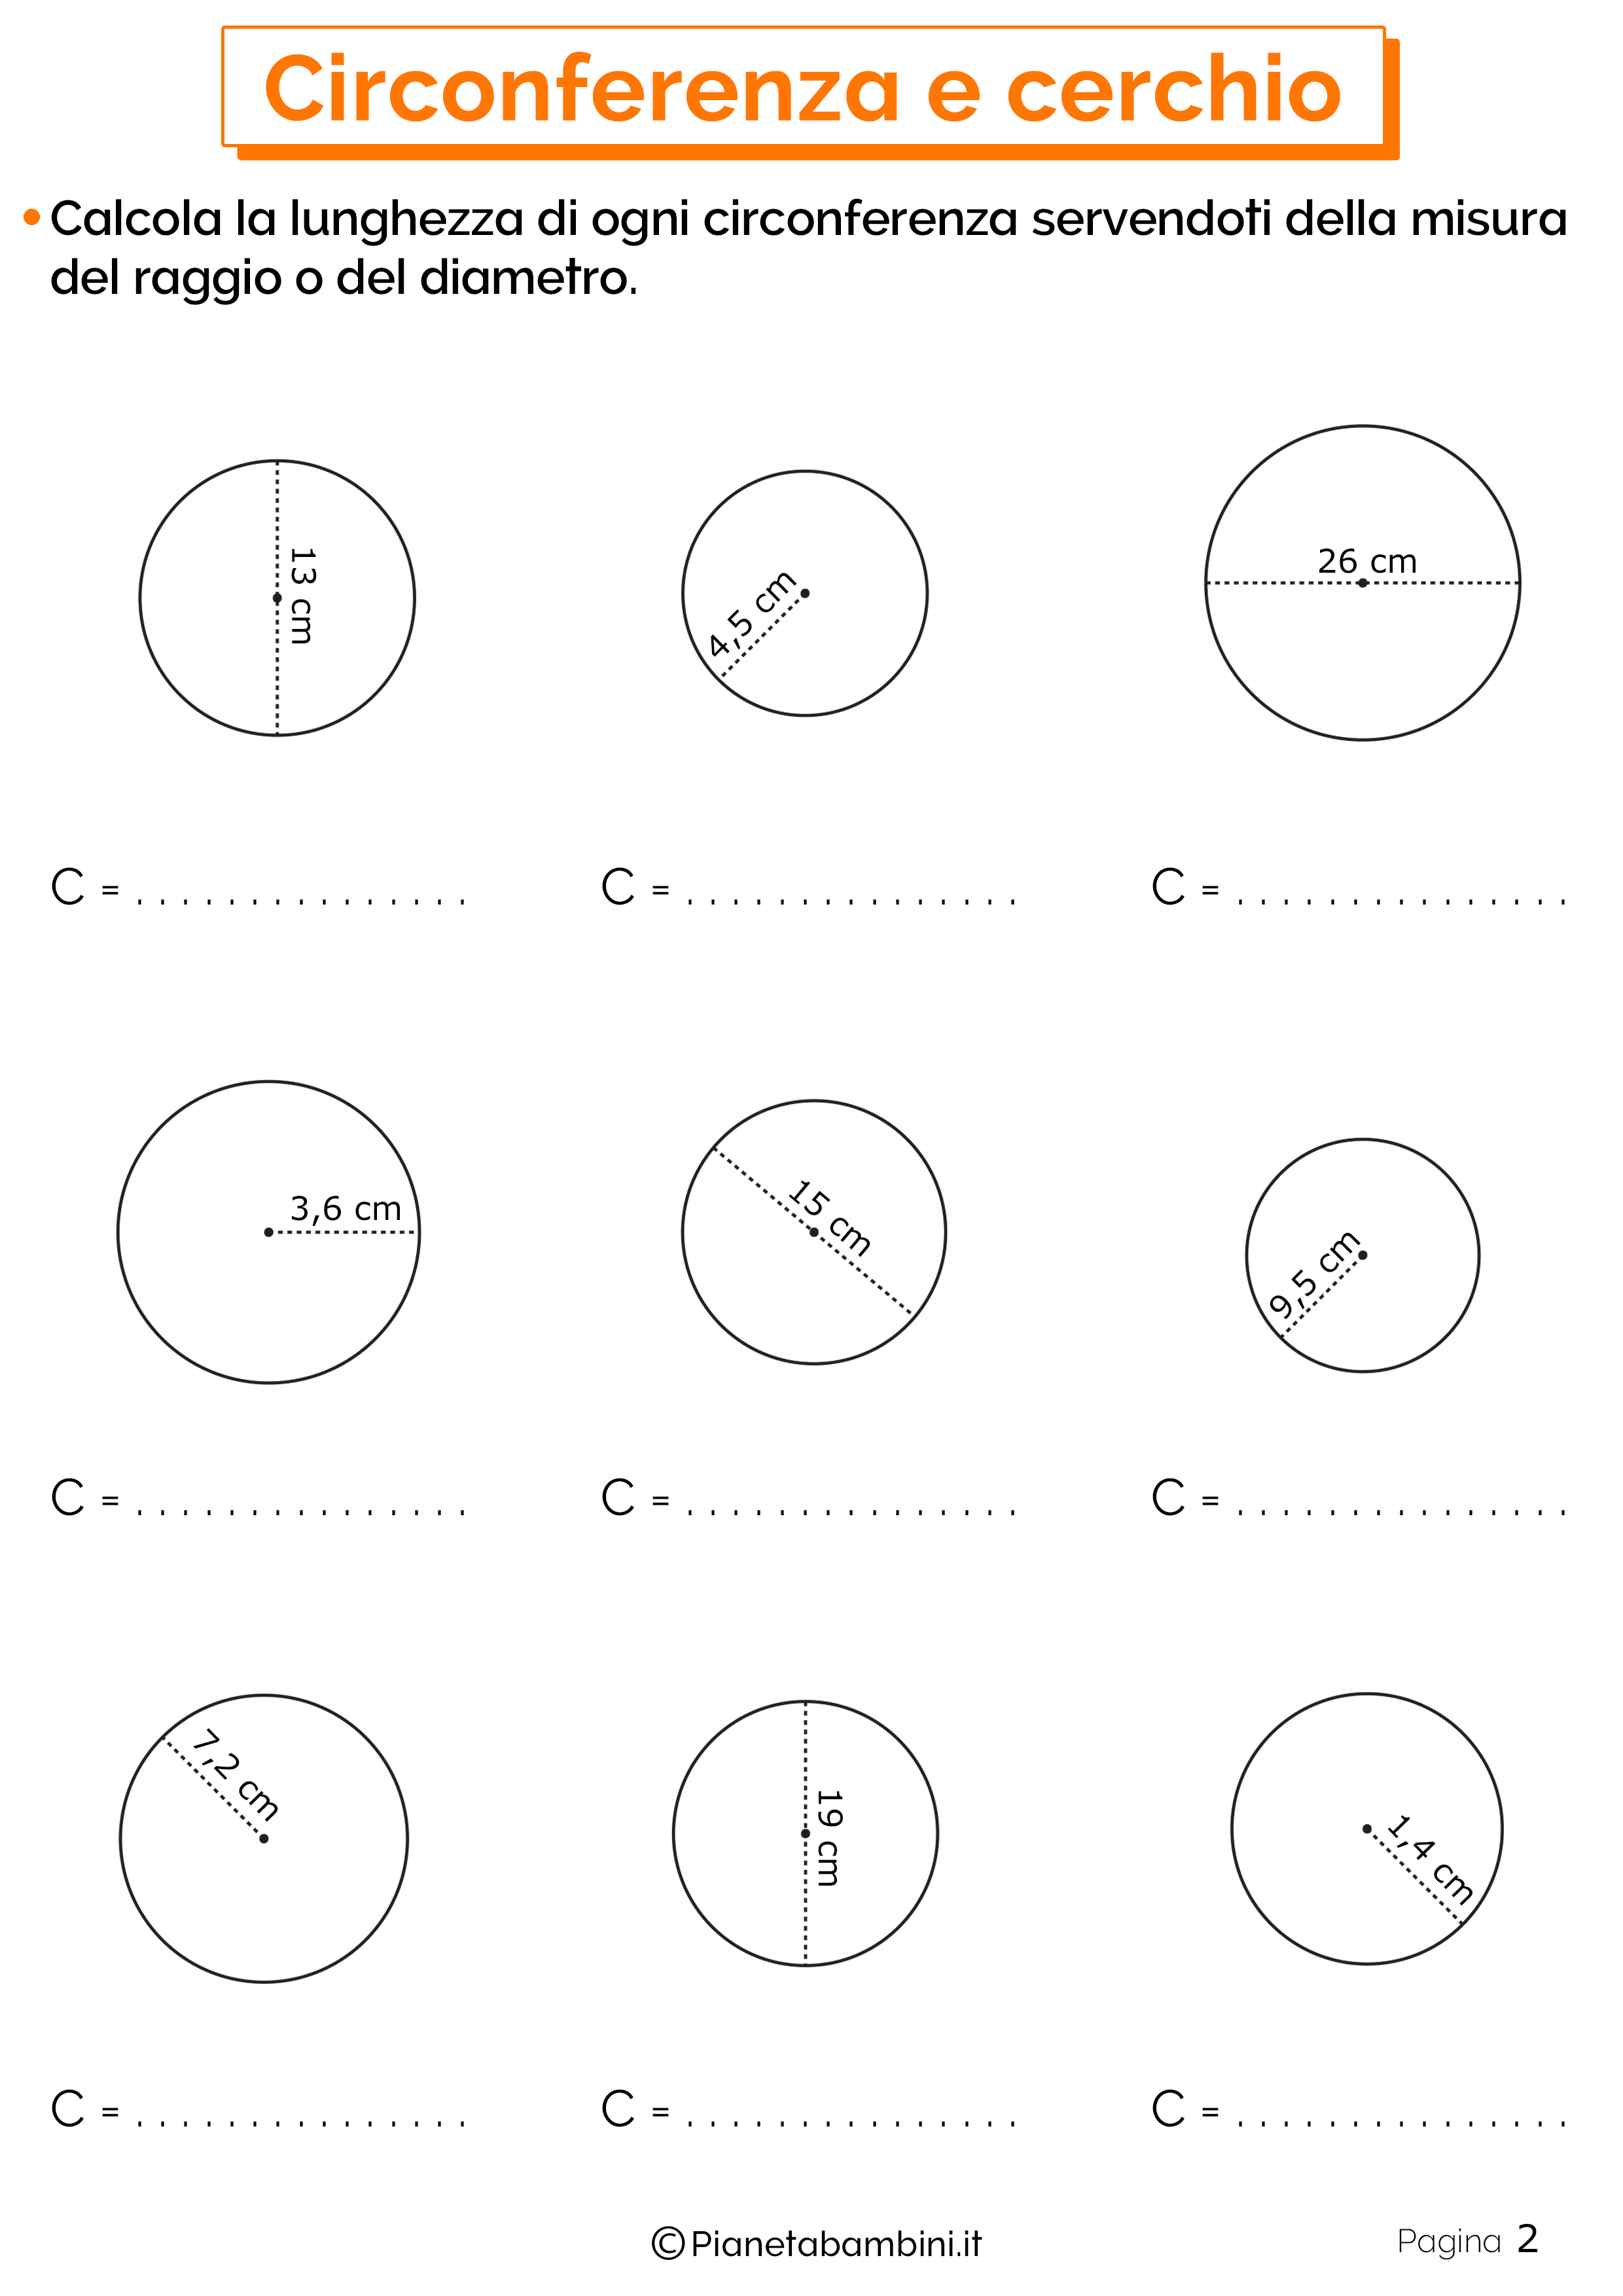 Schede didattiche su circonferenza e cerchio 2